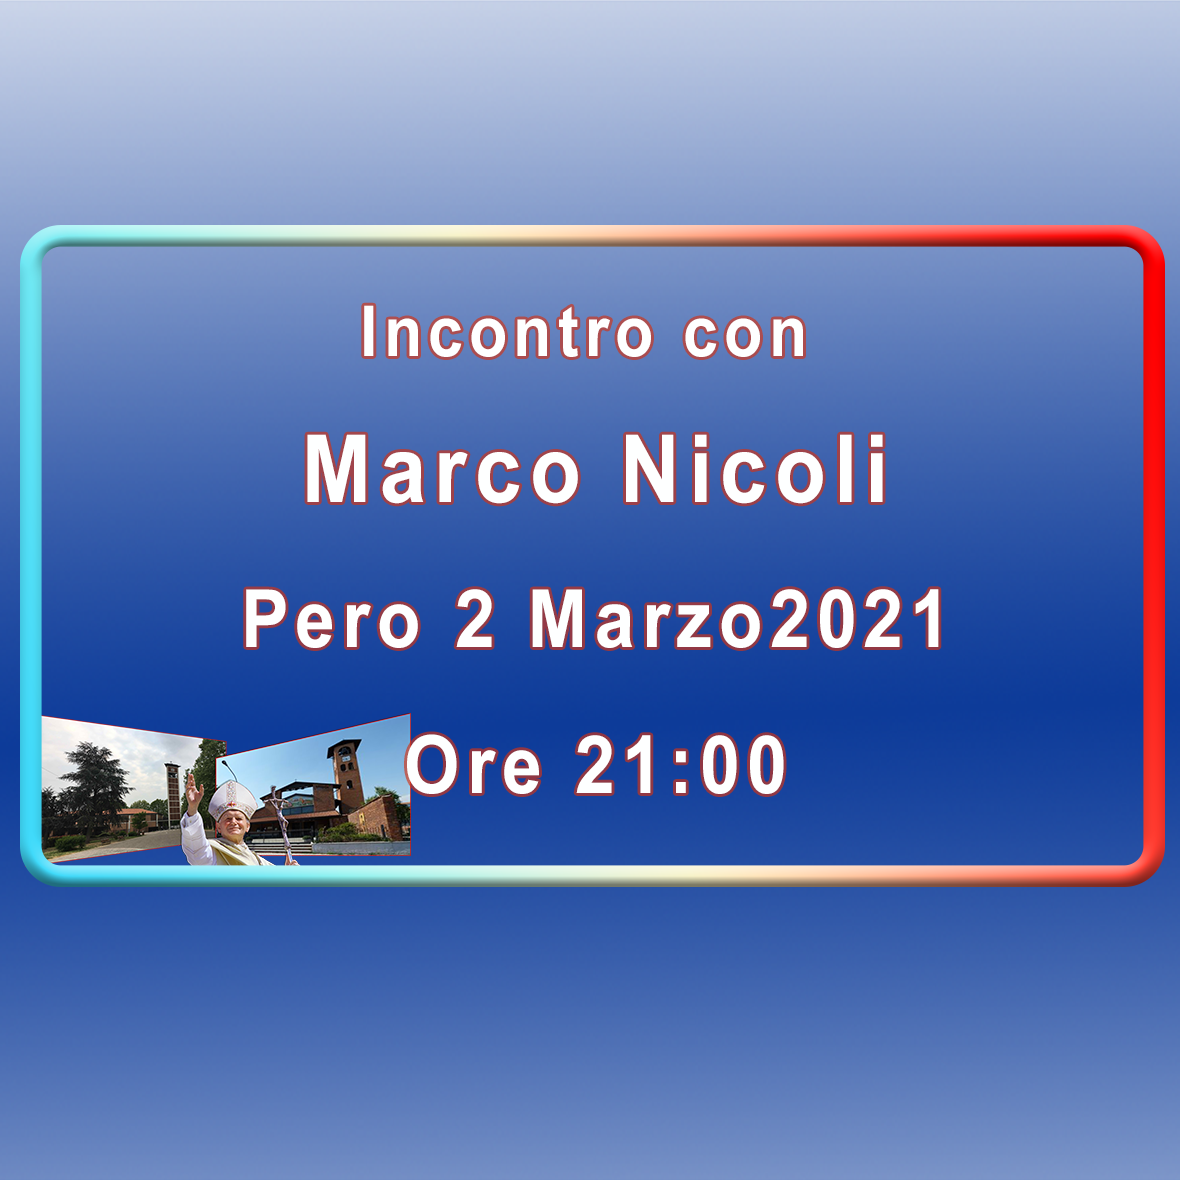 Incontro con Marco Nicoli